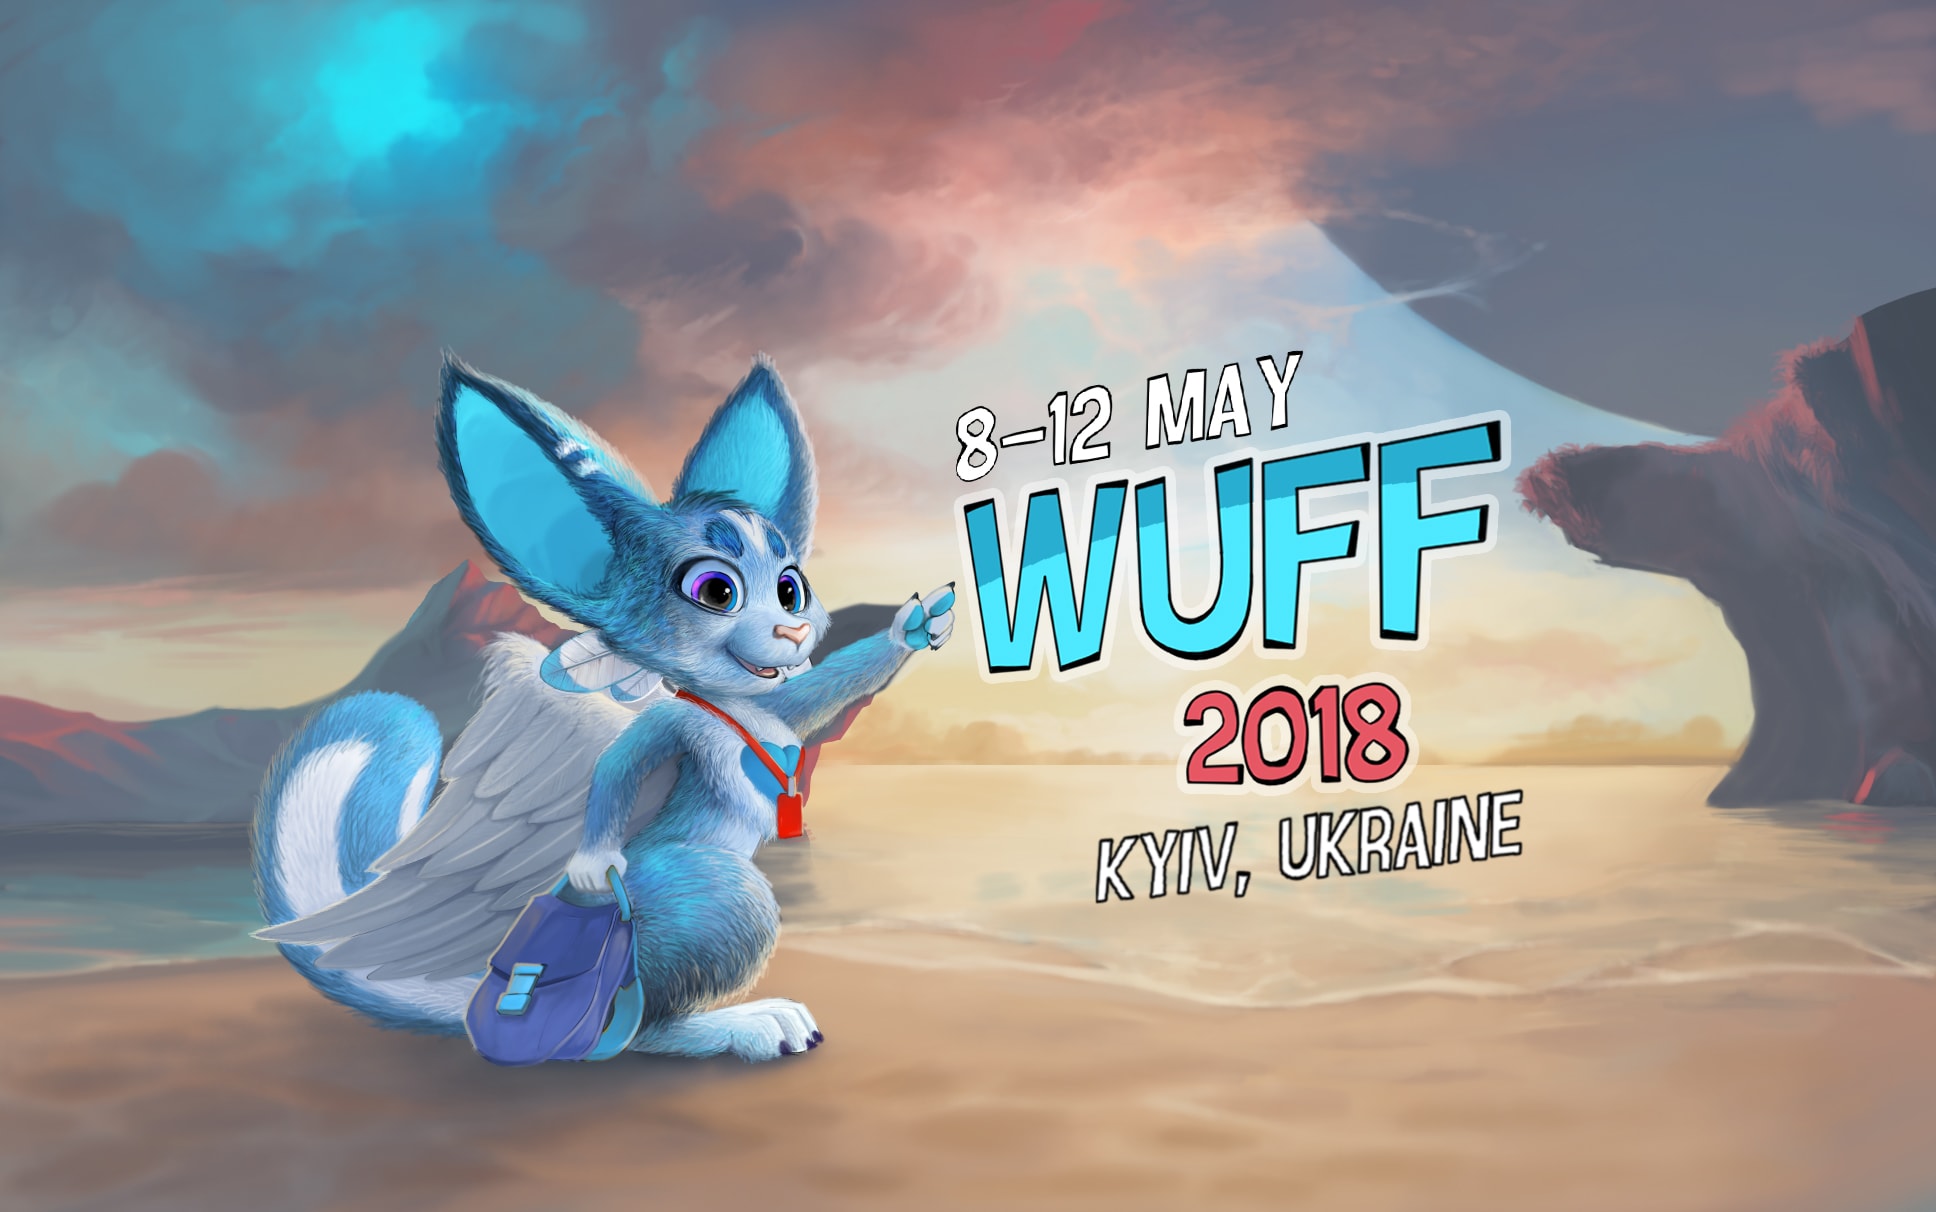 WUFF 2018